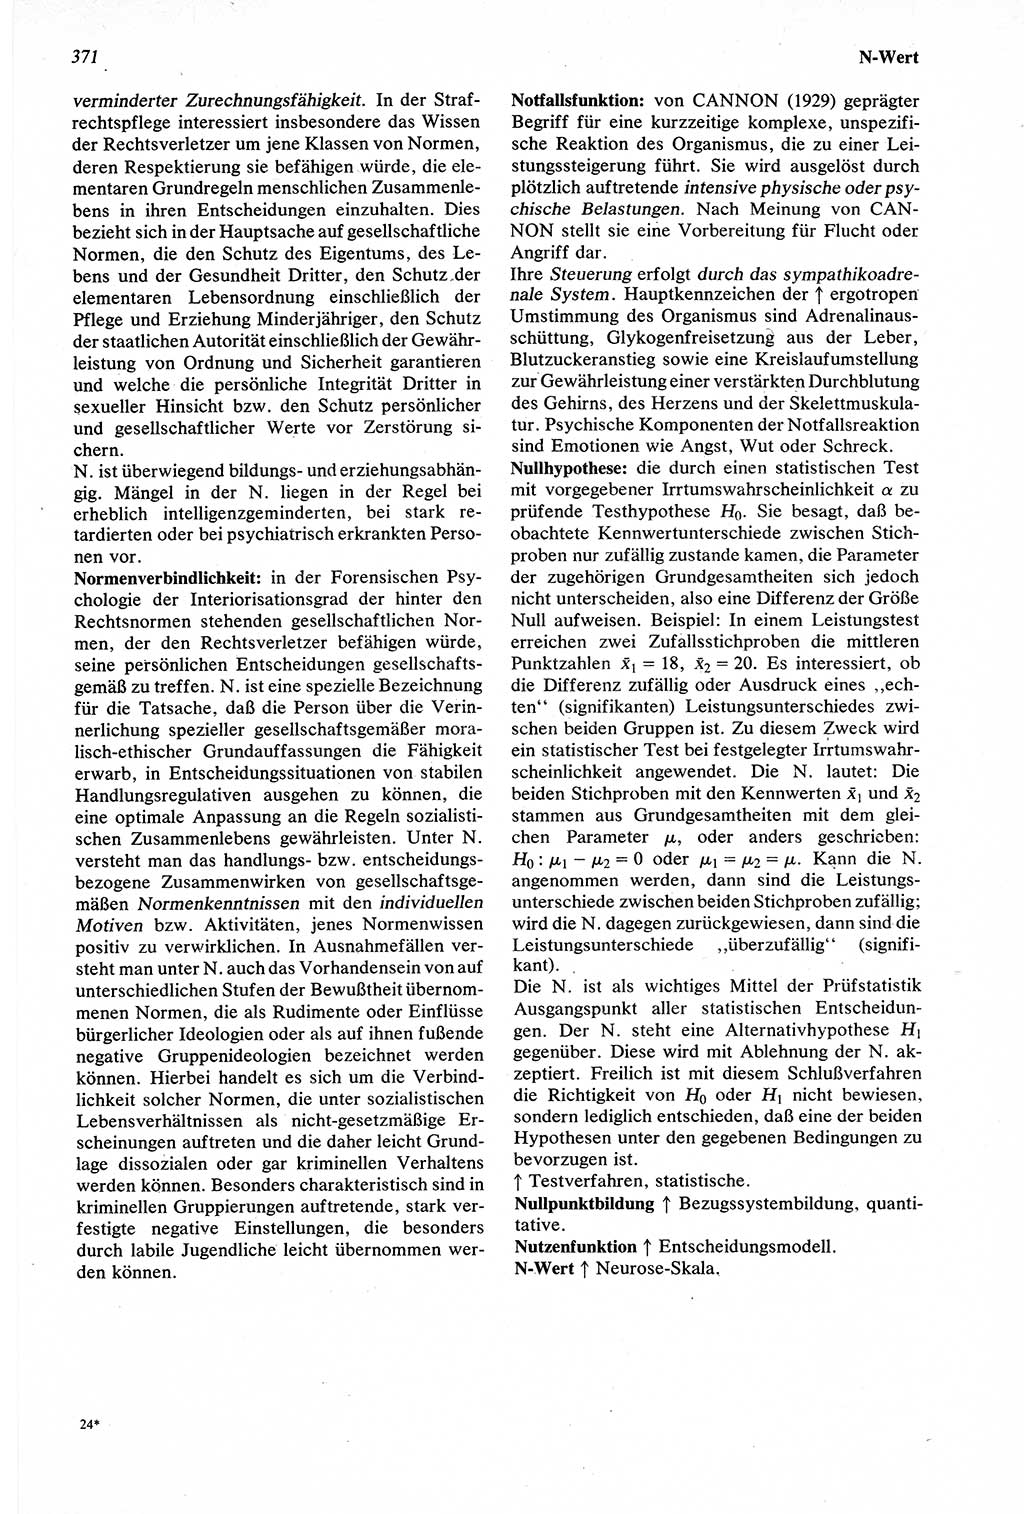 Wörterbuch der Psychologie [Deutsche Demokratische Republik (DDR)] 1976, Seite 371 (Wb. Psych. DDR 1976, S. 371)